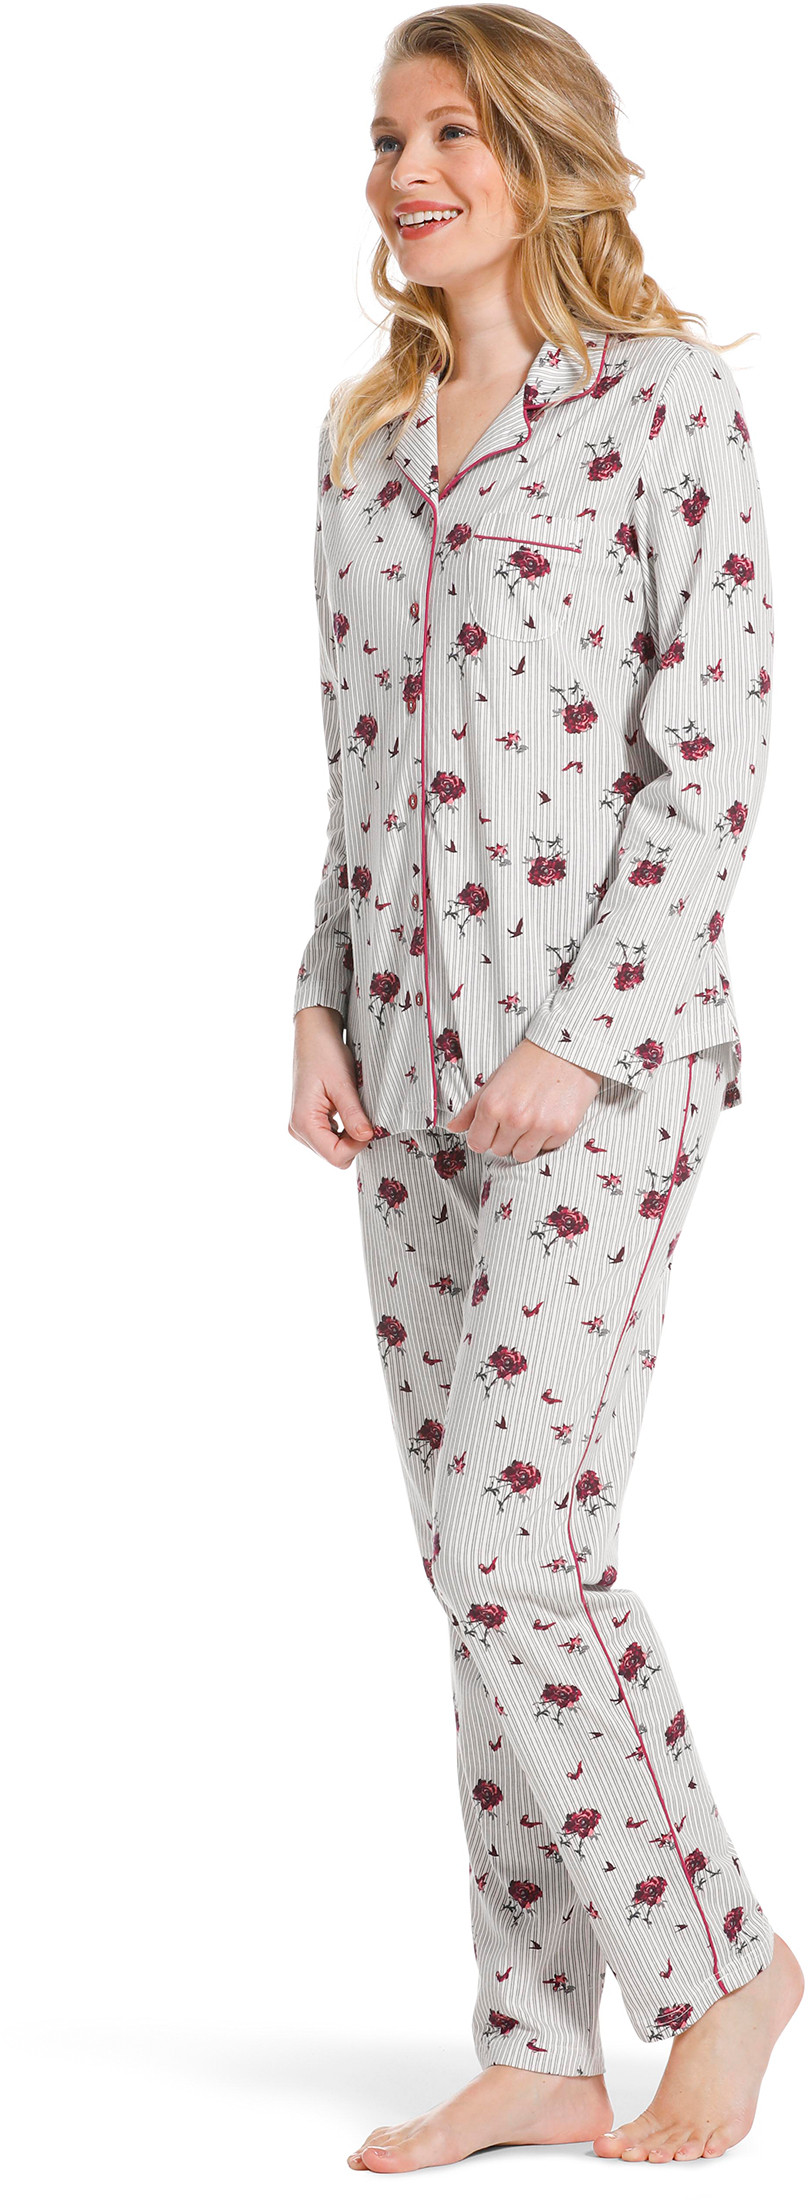 Pastunette doorknoop dames pyjama 20222-156-6-52